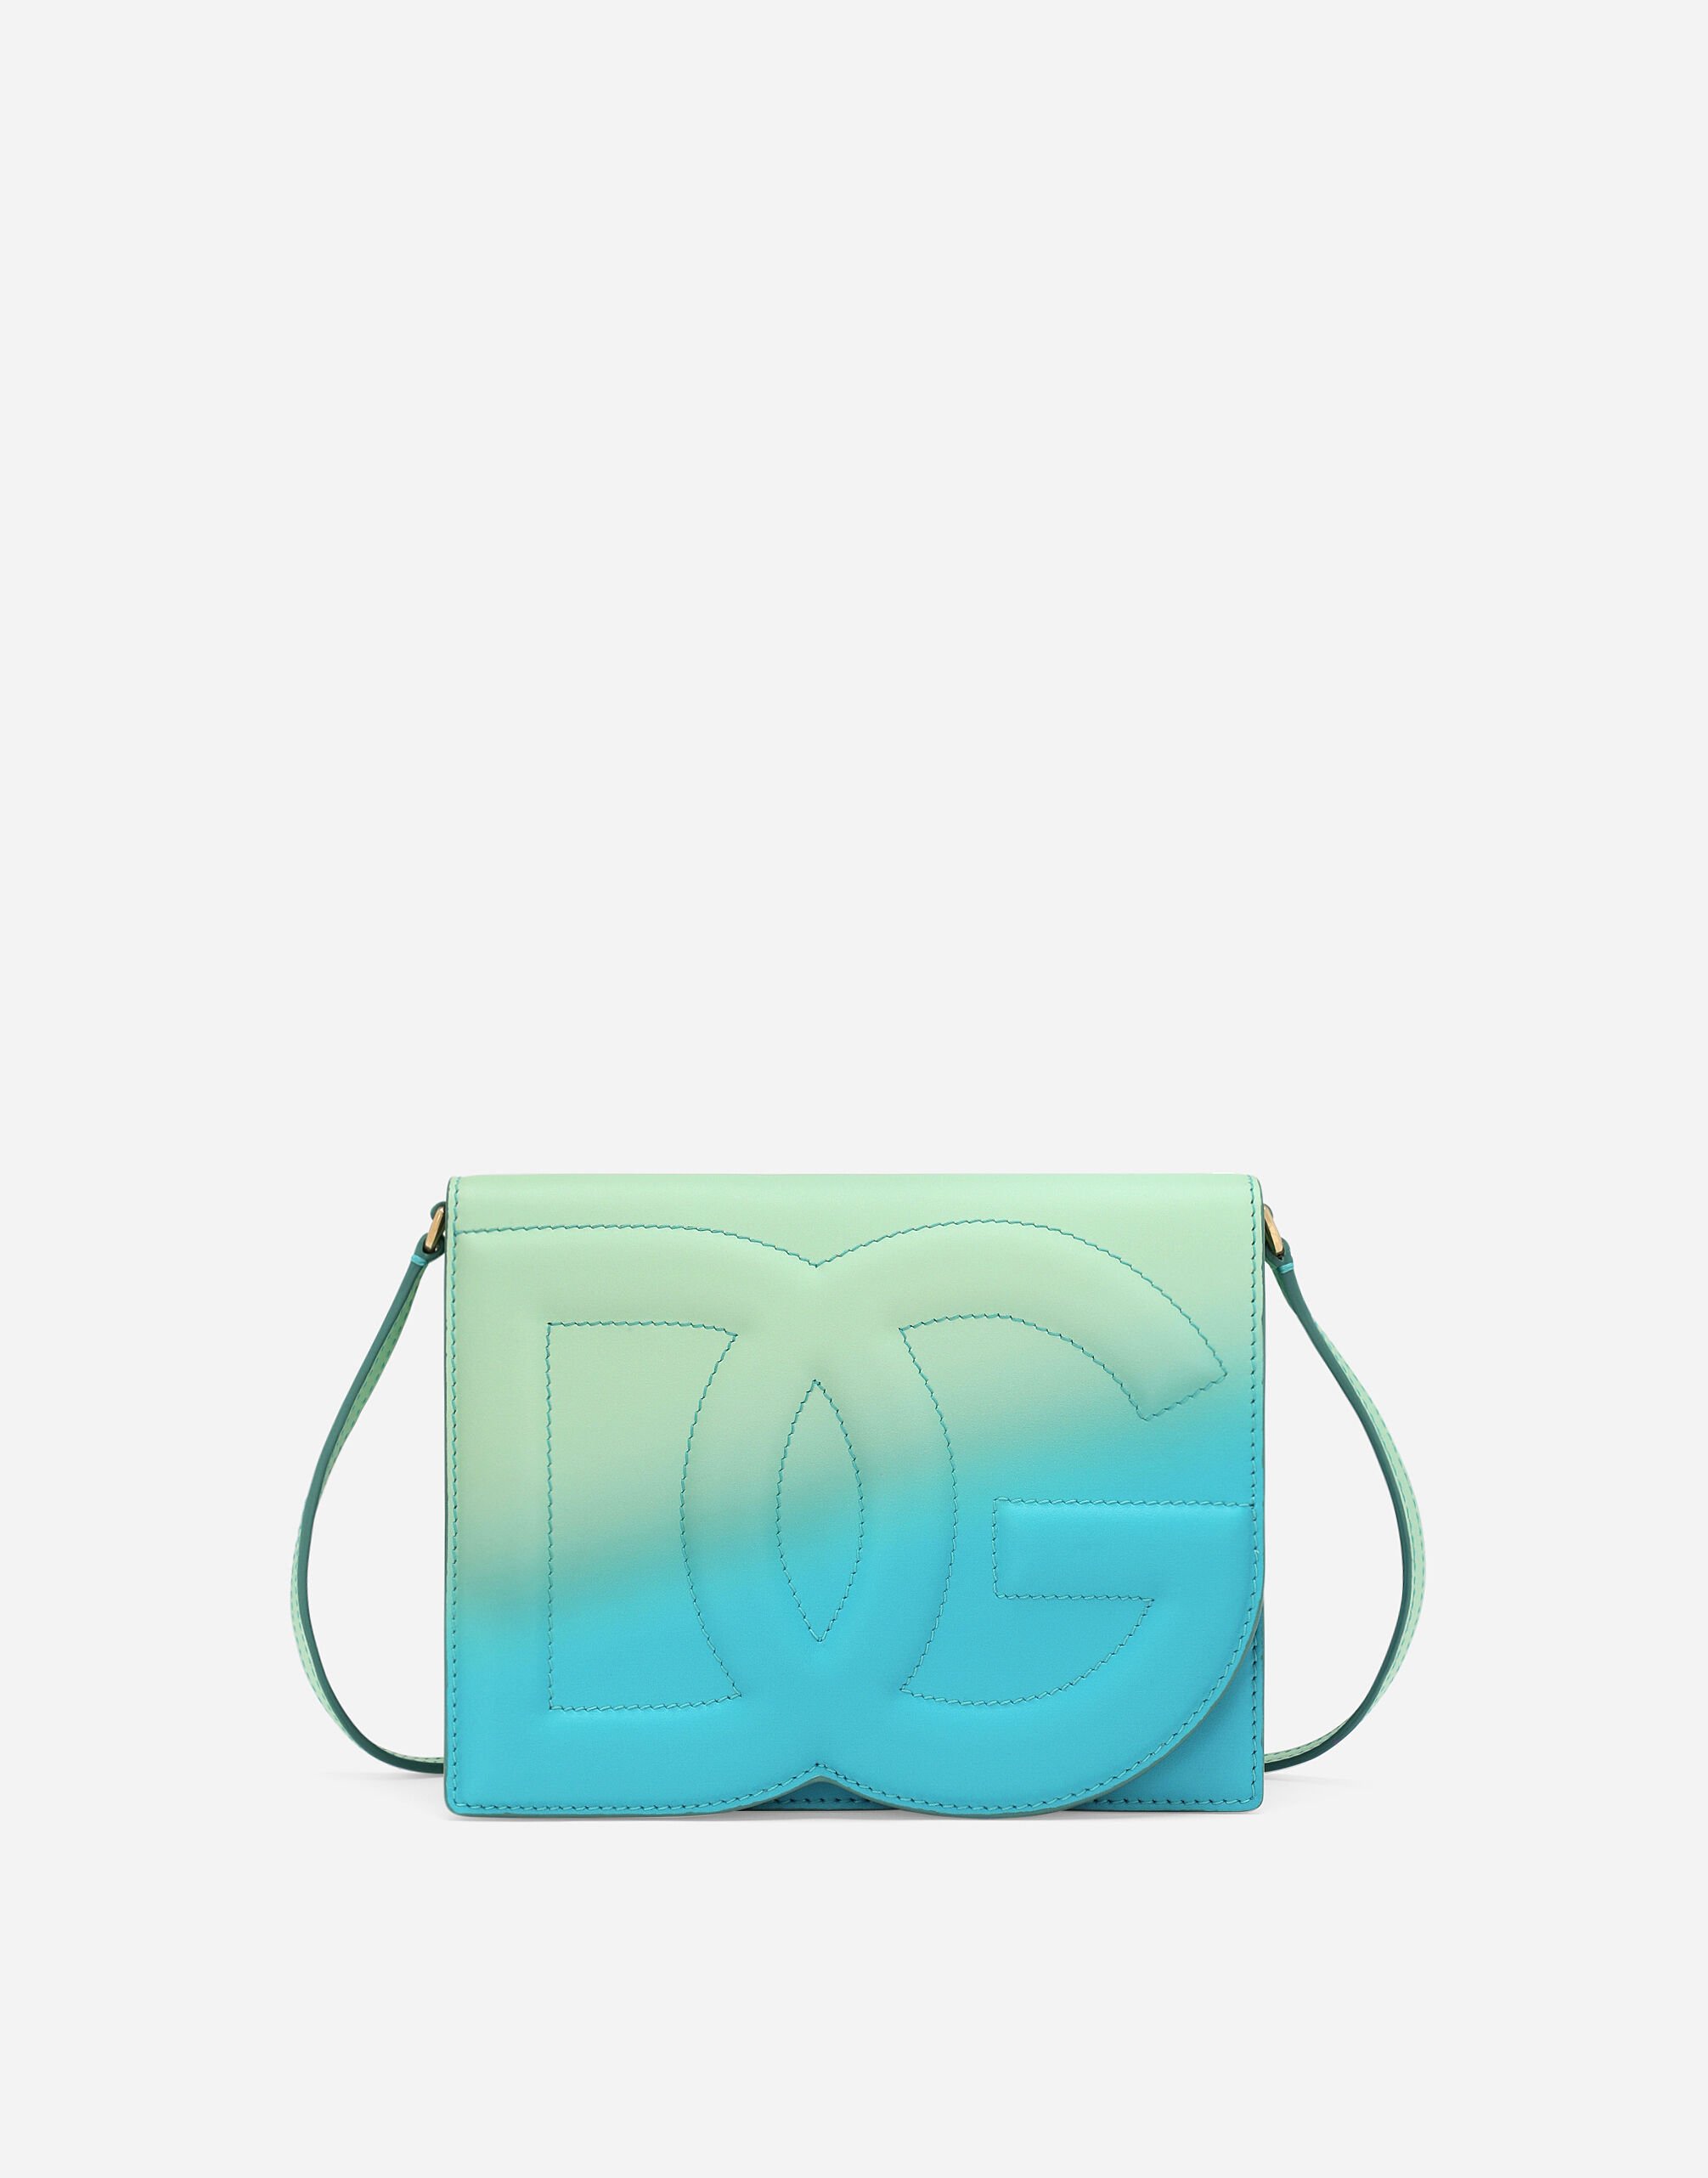 Dolce & Gabbana DG Logo Bag crossbody bag Green BB6711AV893